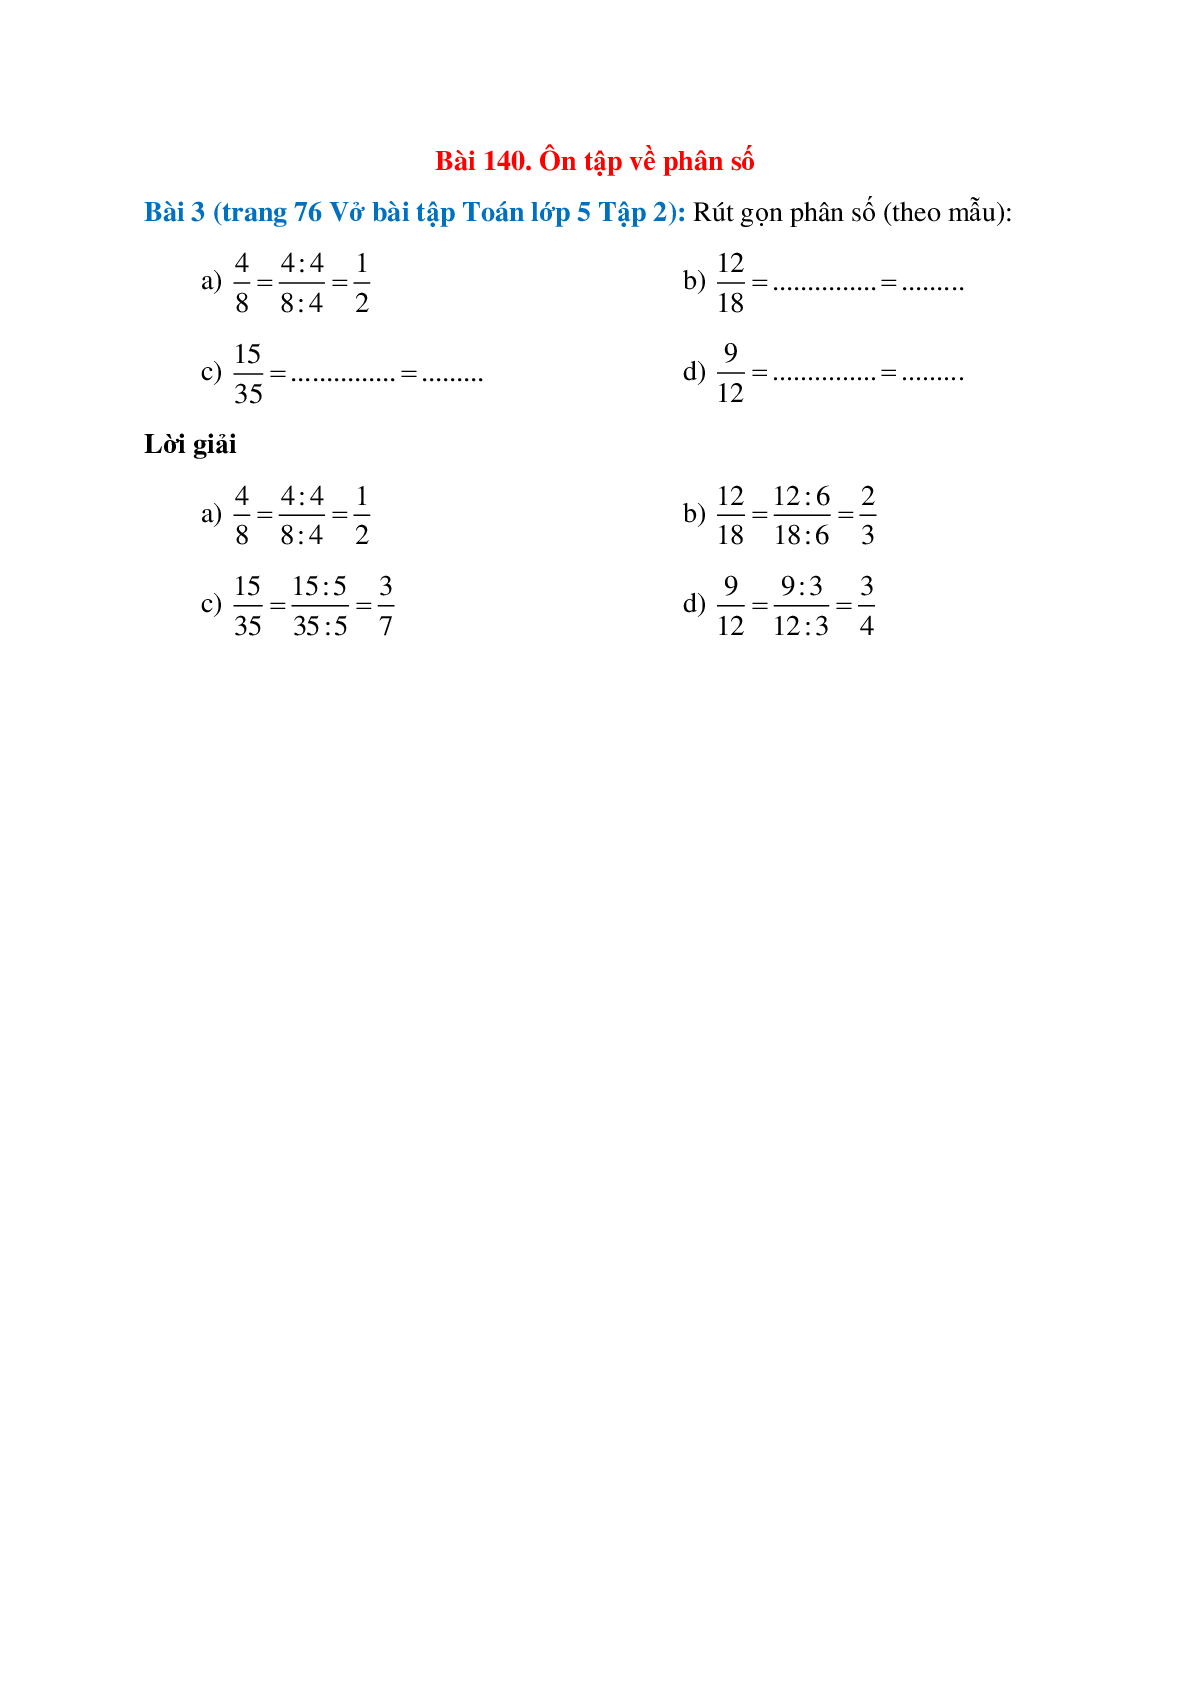 Rút gọn phân số (theo mẫu): 4/8=(4:4)/(8:4)=1/2 (trang 1)